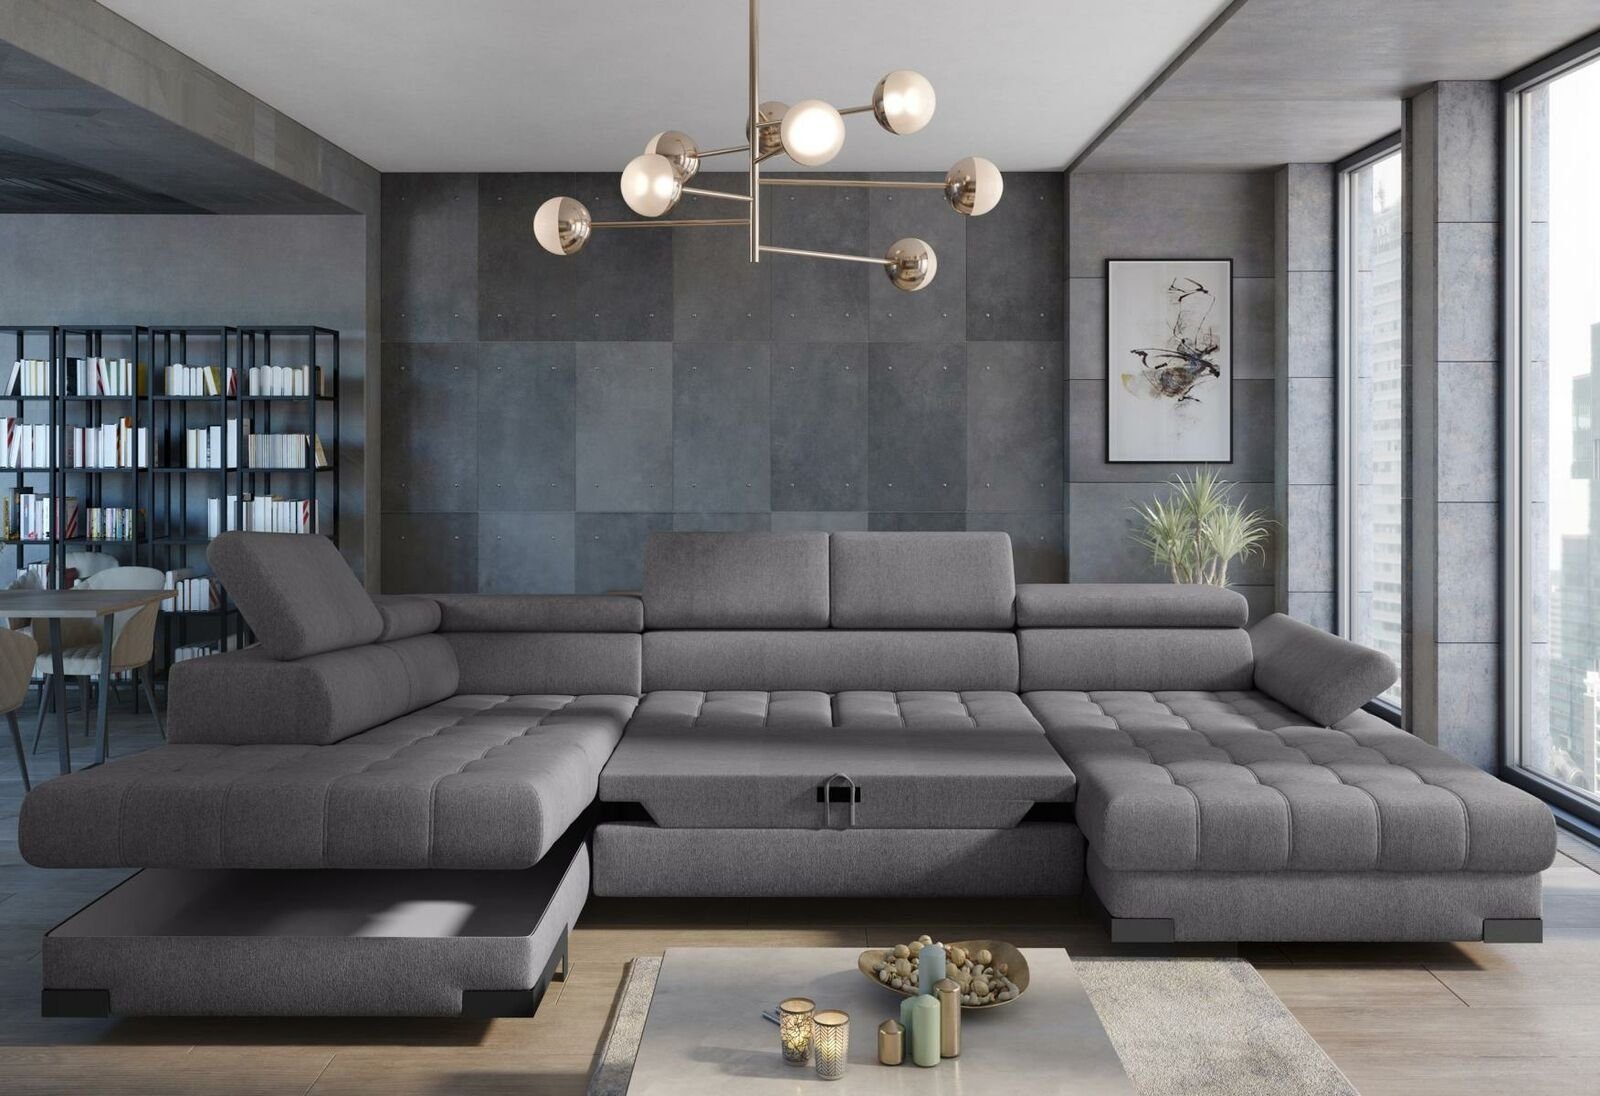 JVmoebel Ecksofa, Couch TextilLeder Sofas Eckcouch Kasten Neu Design Ecksofa U-form